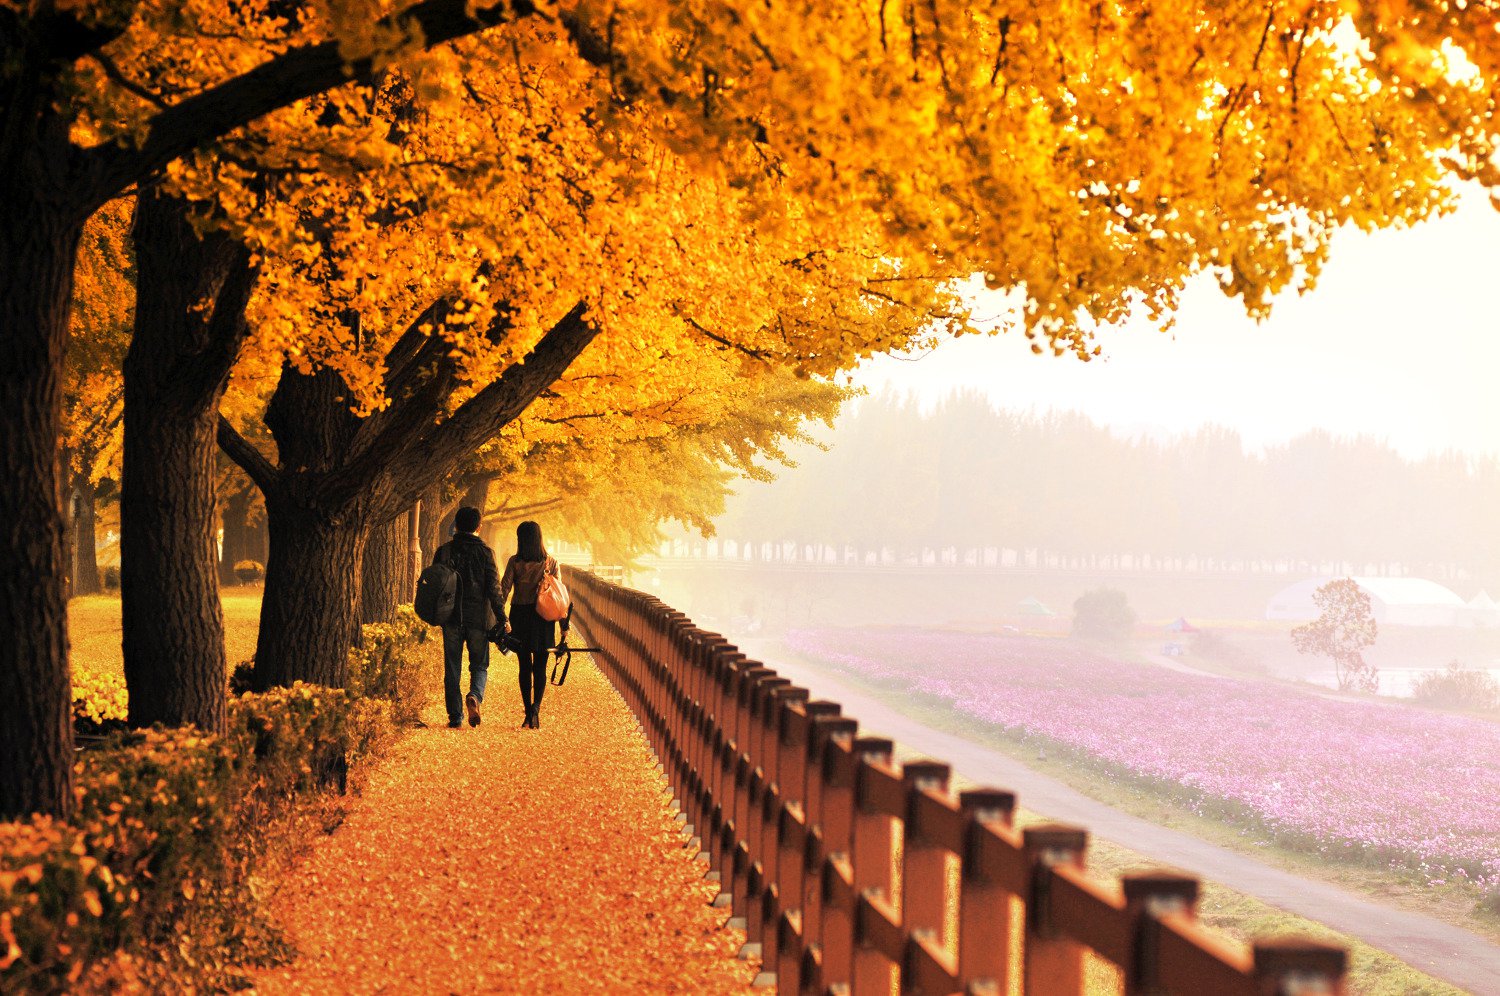 Con đường Hyeonchungsa với những hàng cây lá vàng rực rỡ trong mùa thu.